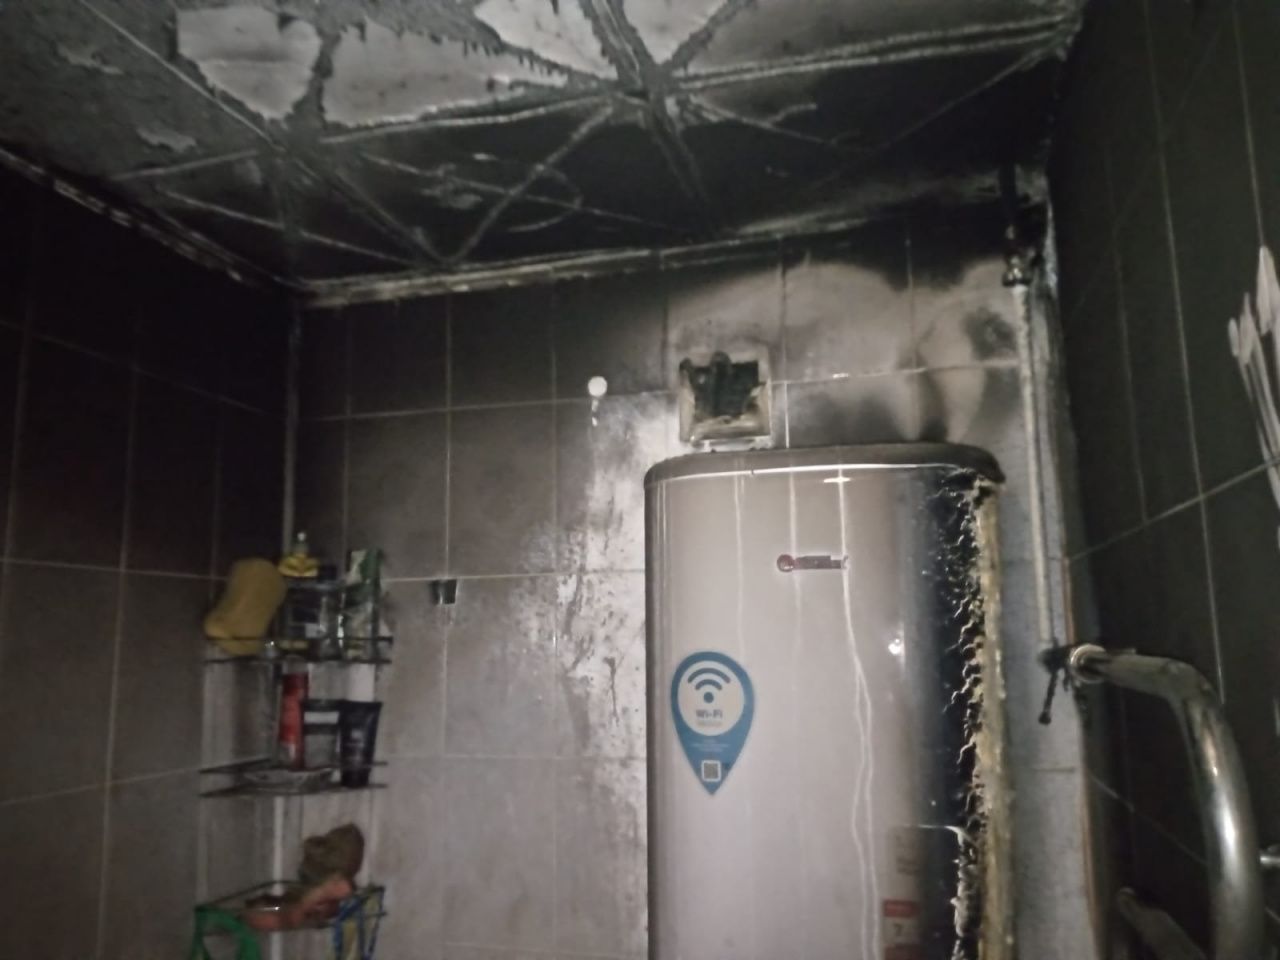 Возгорание в квартире по Луначарского могло возникнуть из-за короткого замыкания электропроводки